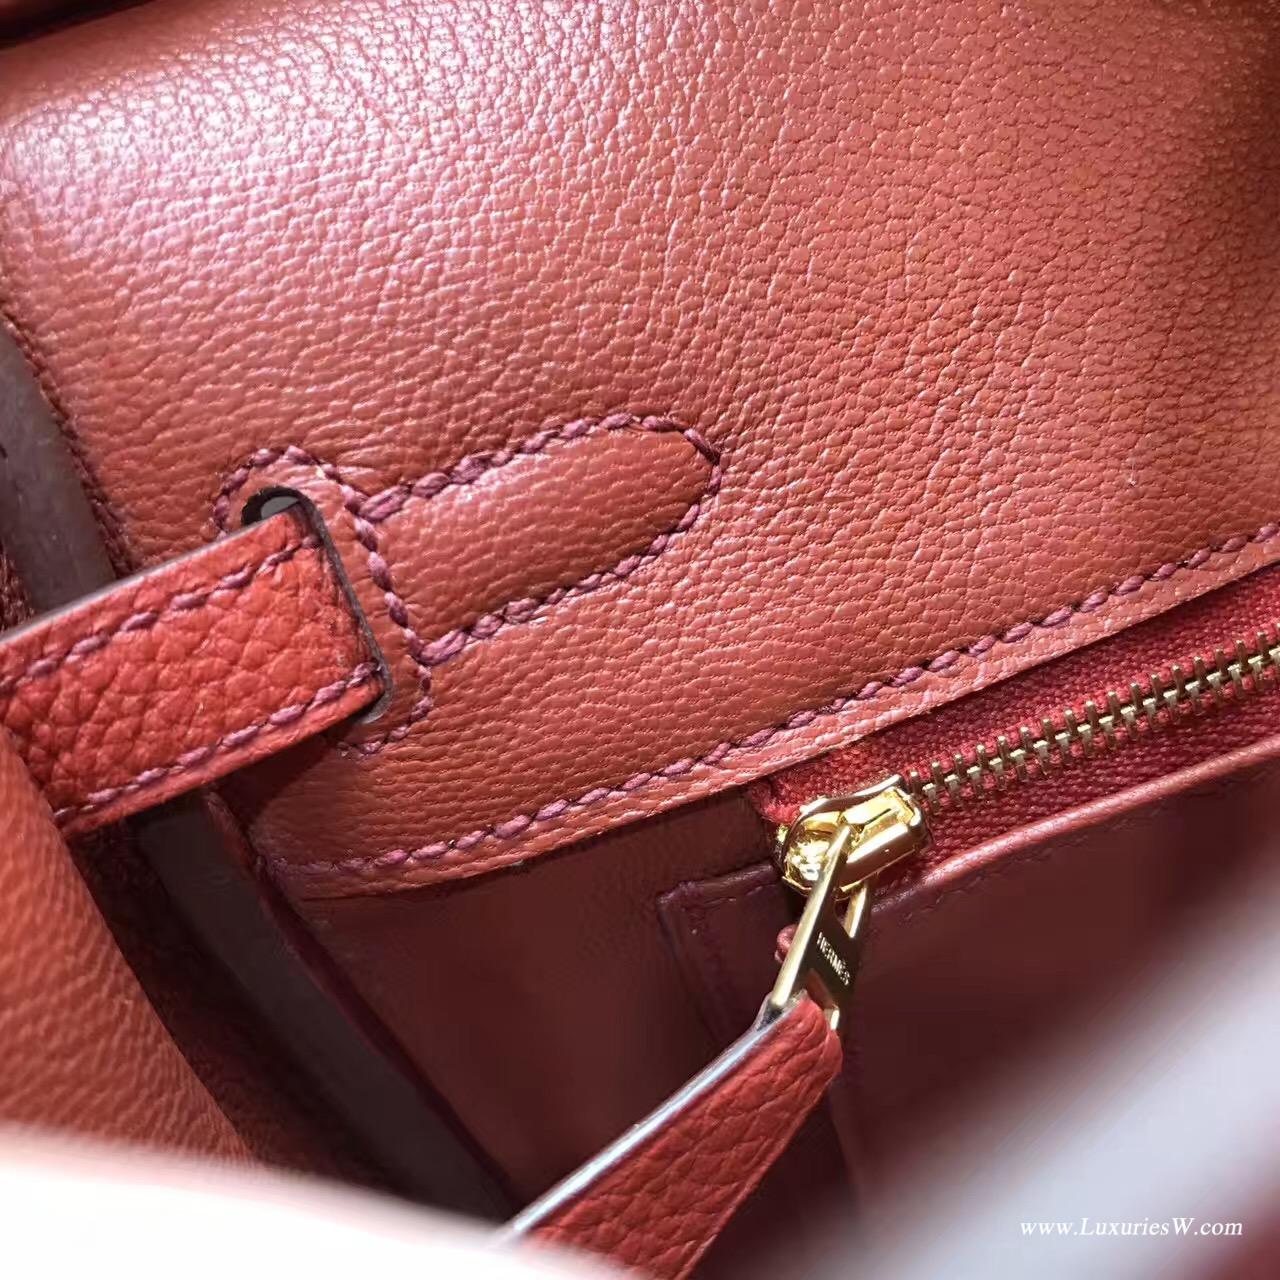 Hermès 铂金包（Birkin）爱马仕最出名的包袋 Birkin 25 togo小牛皮古铜色